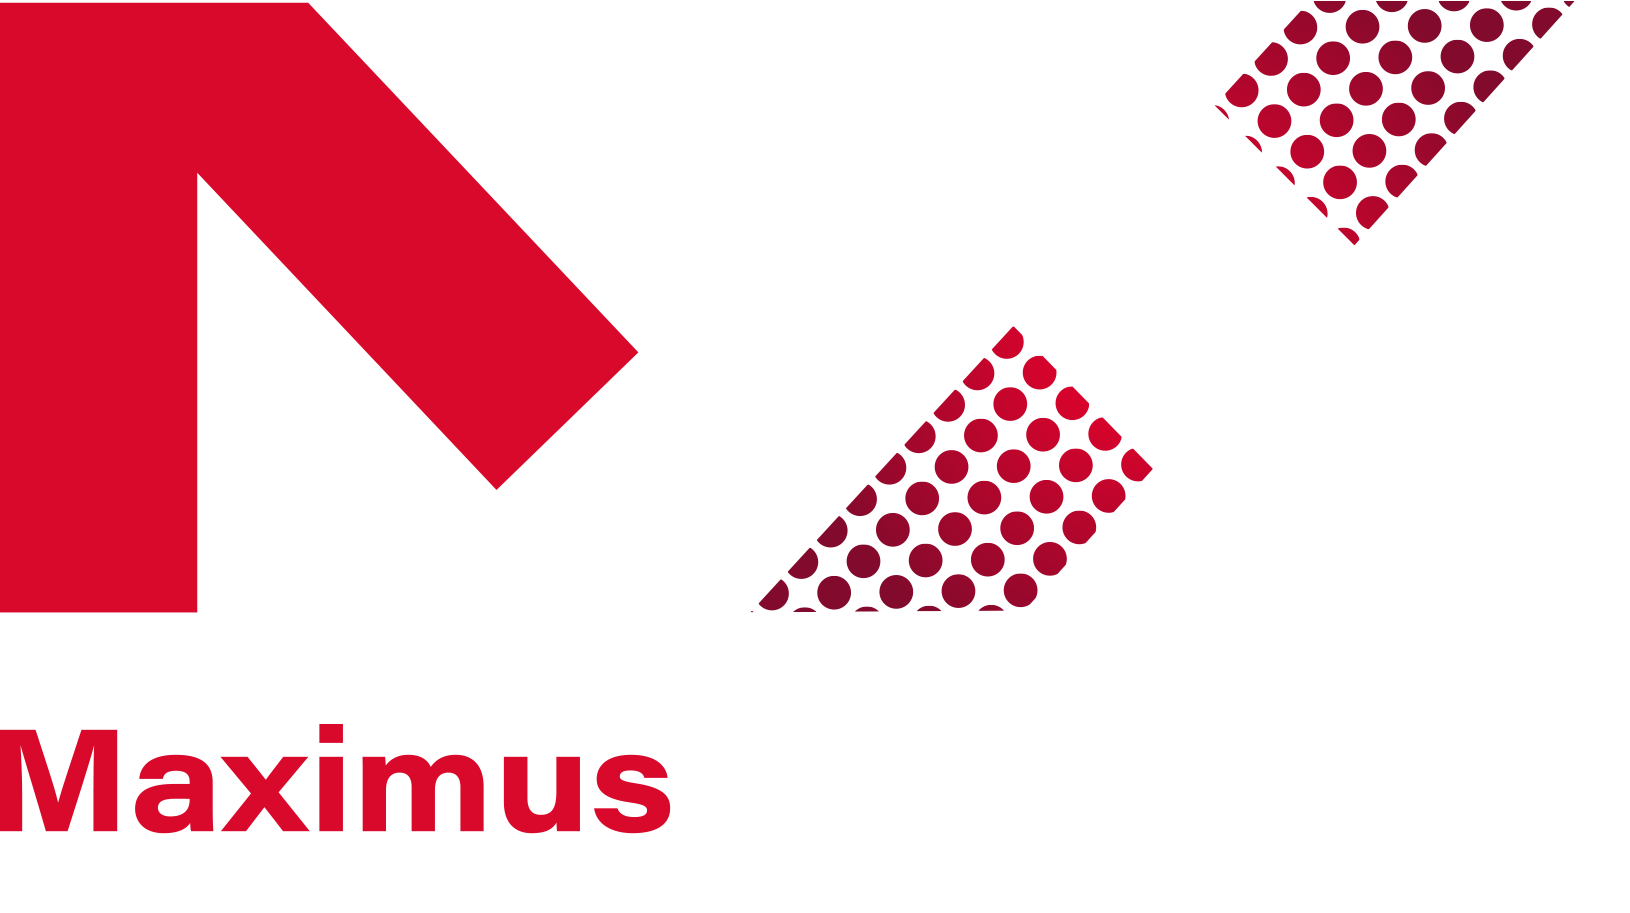 Maximus IT Solutions